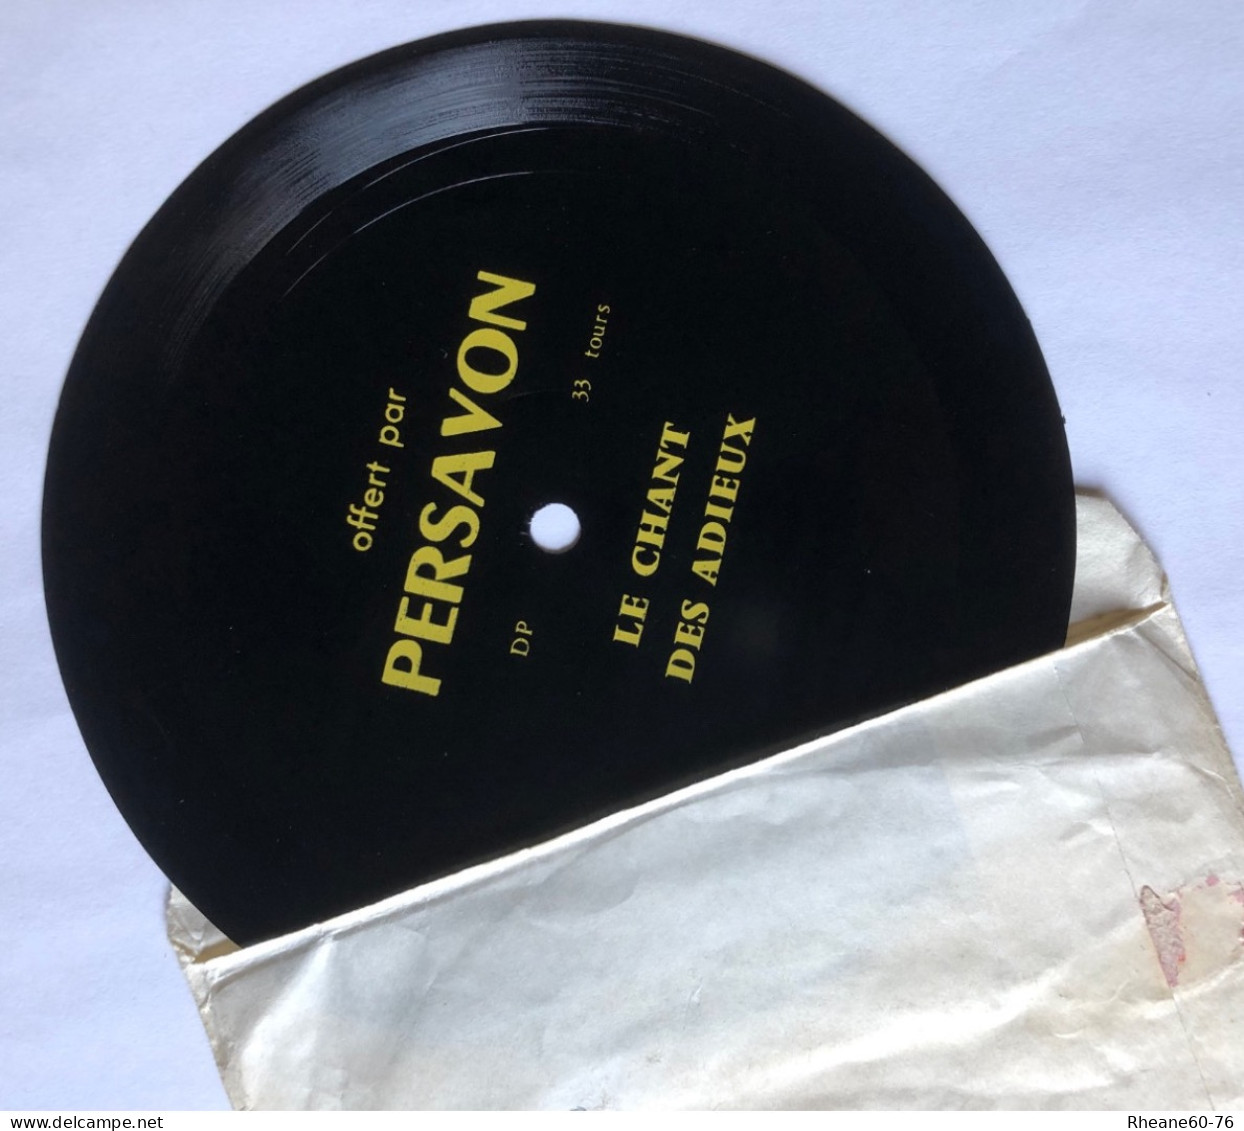 Persavon - Les Chansons De Persavon - 33T Souple Sur Format 45T - Une Seule Face - Le Chant Des Adieux - Pochette Papier - Speciale Formaten